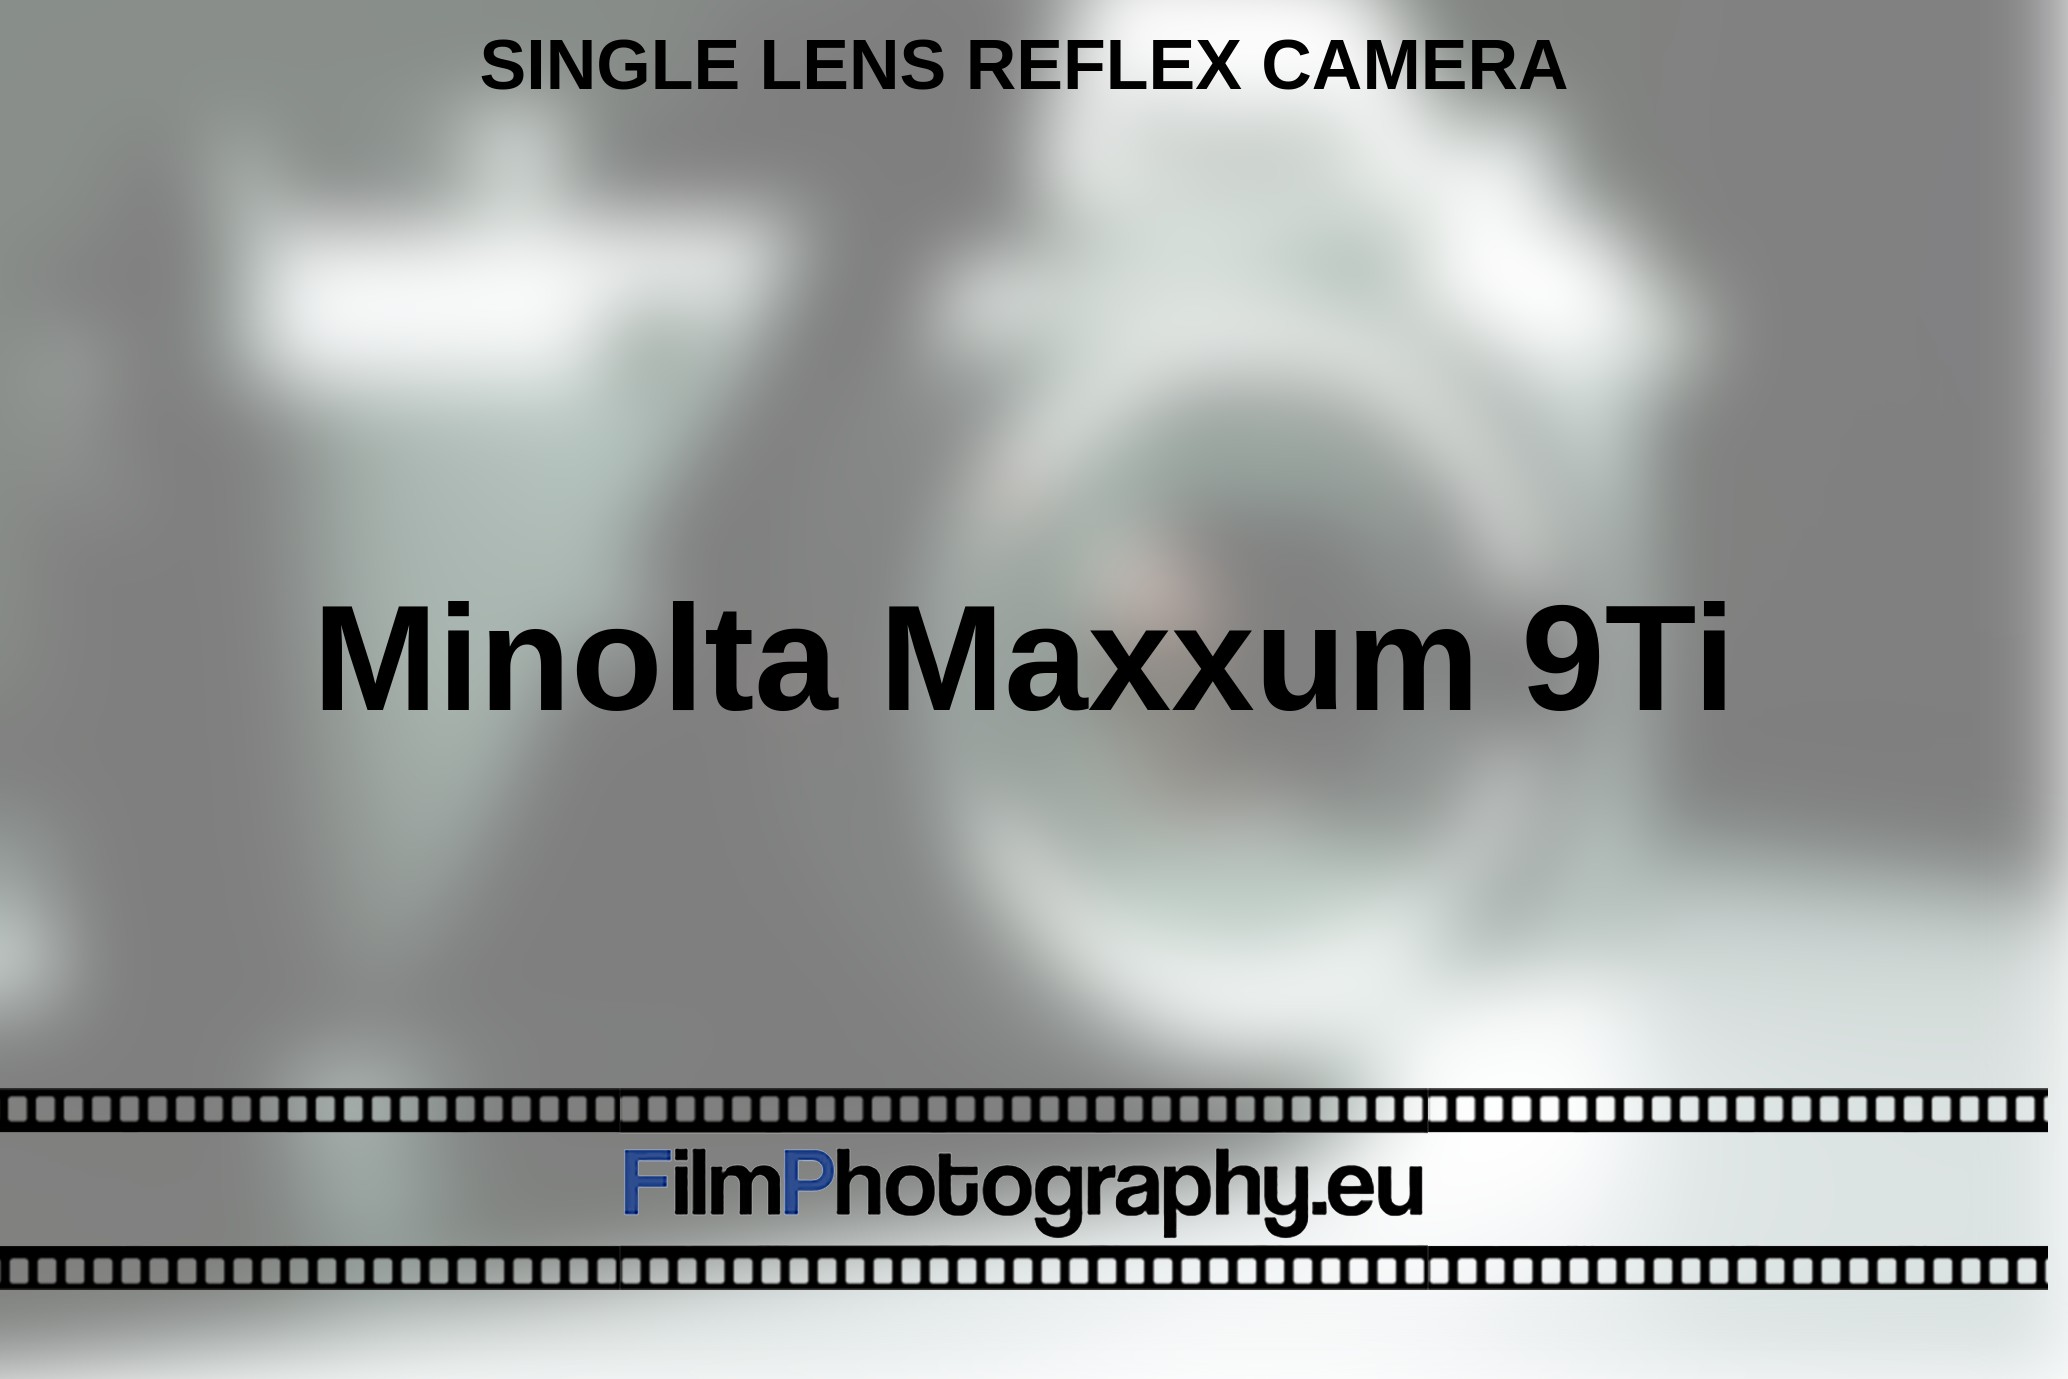 Minolta-Maxxum-9Ti-single-lens-reflex-camera-bnv.jpg